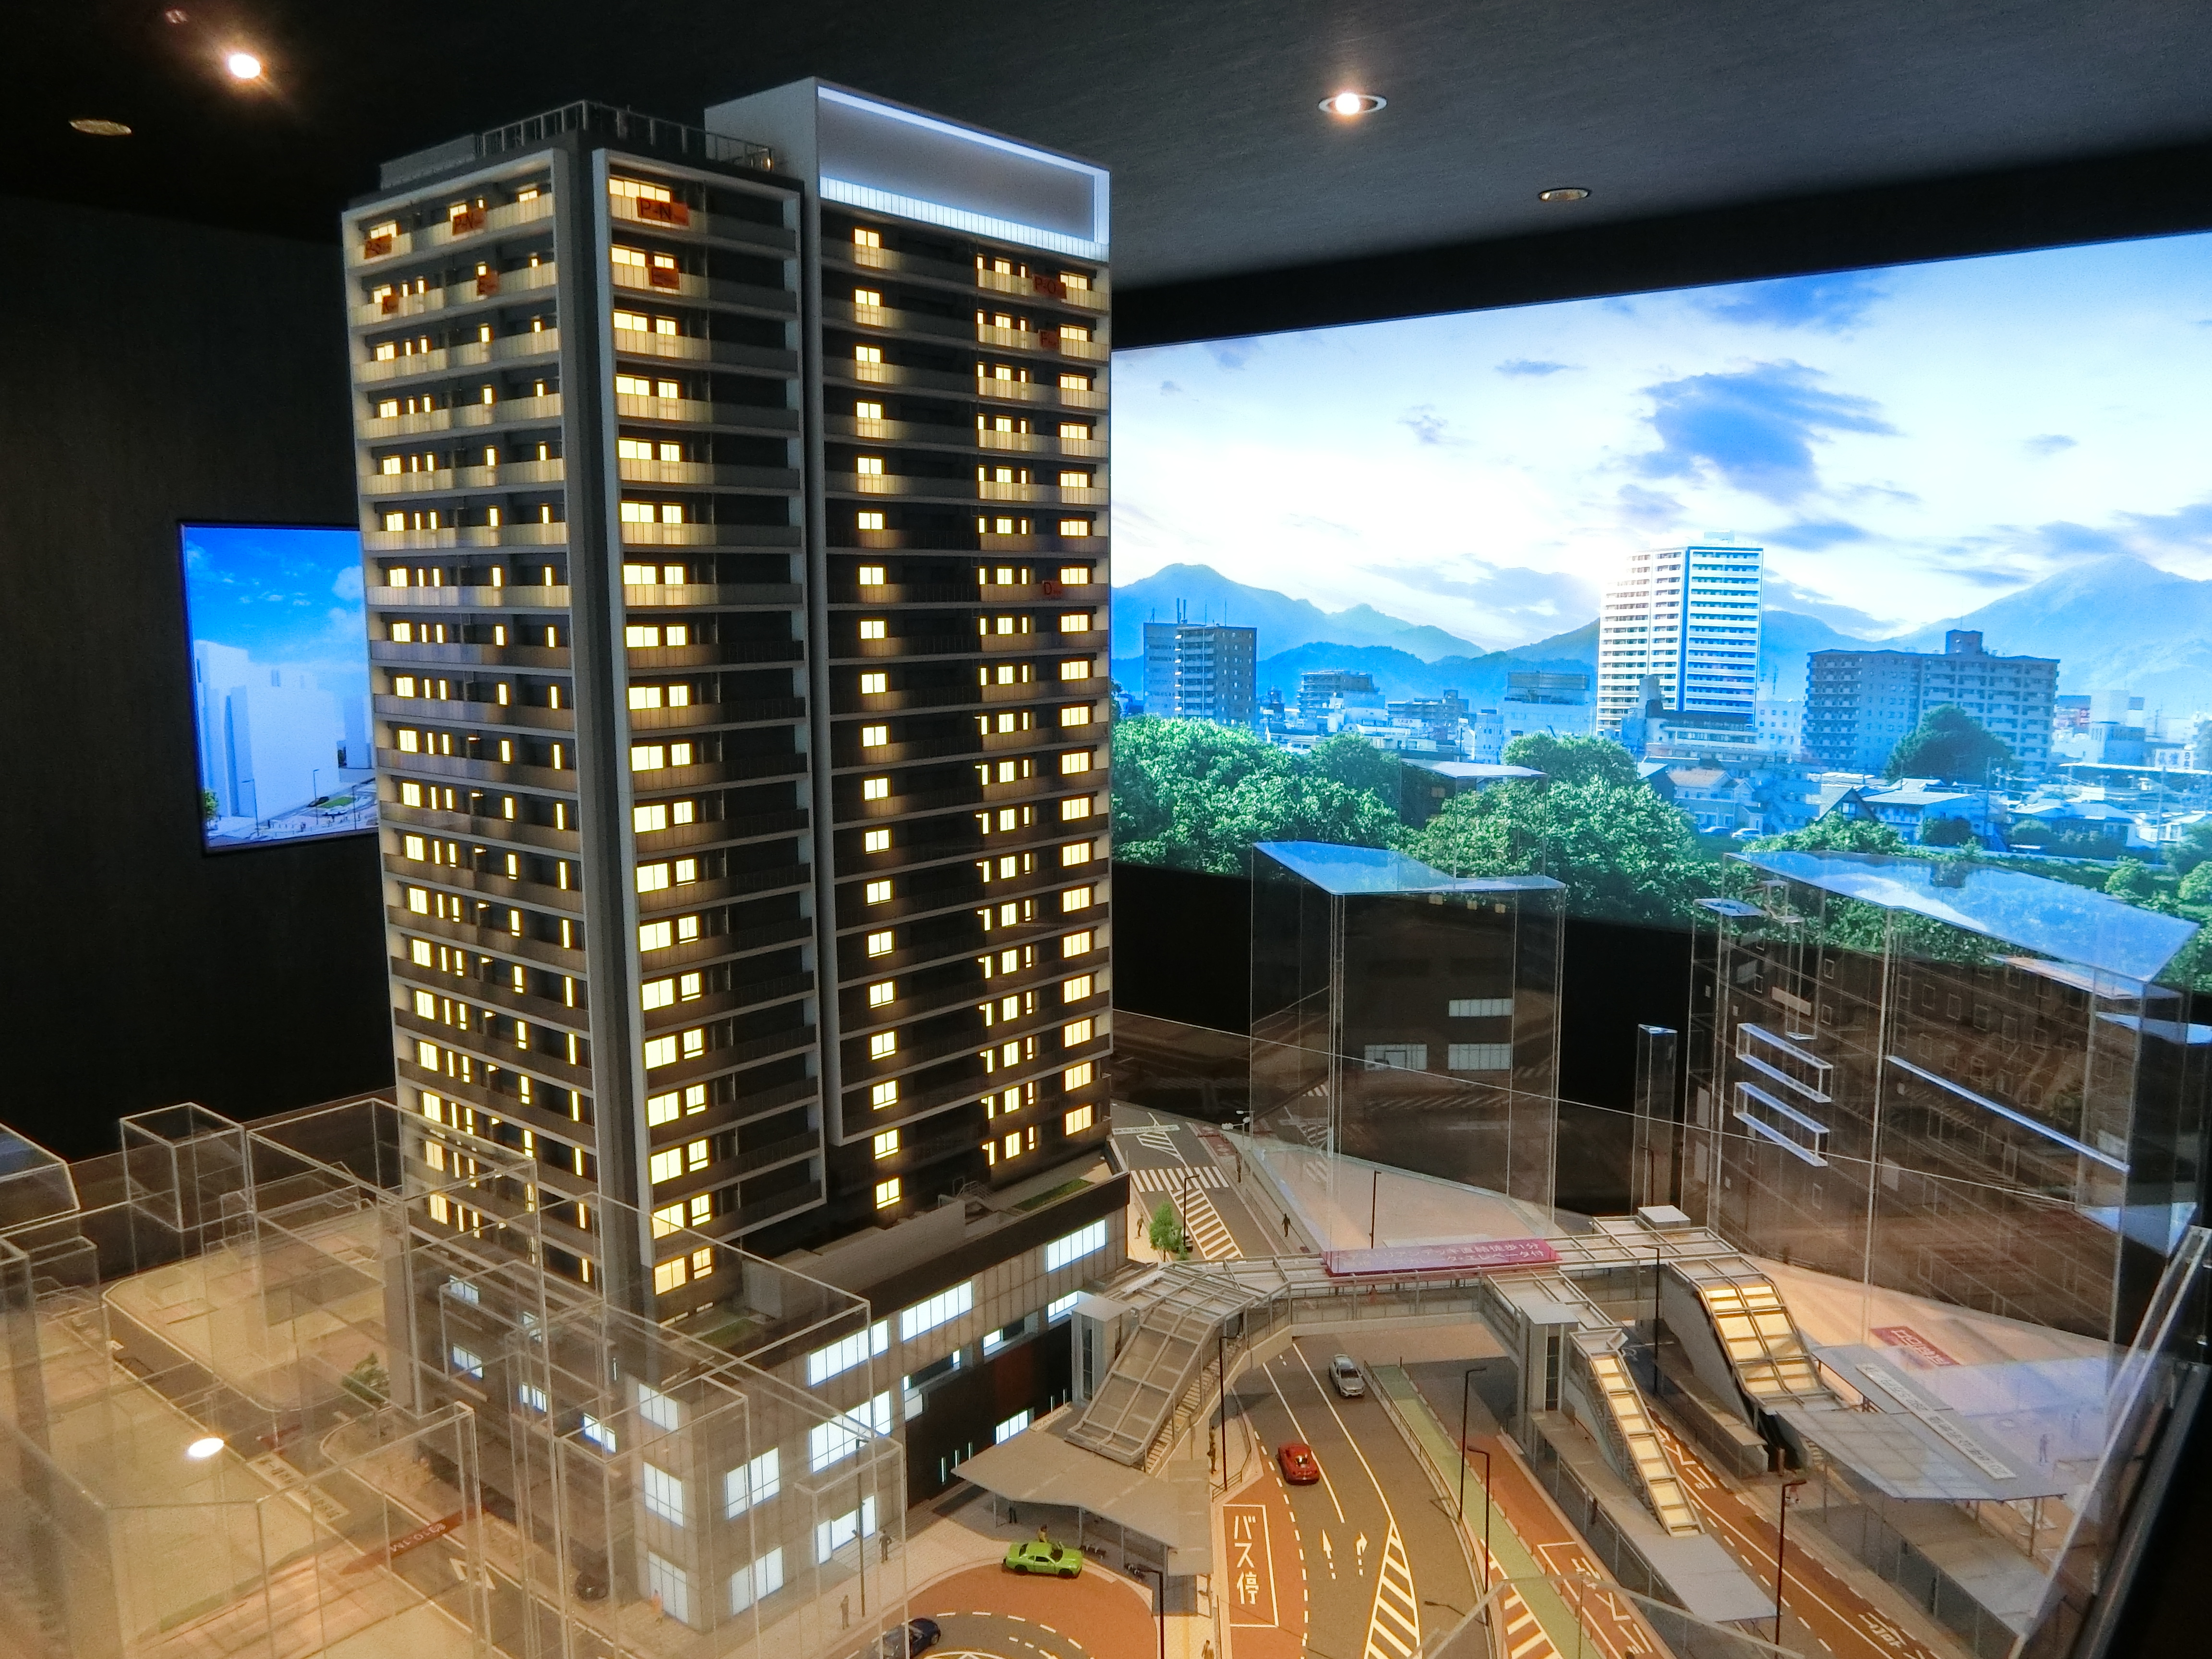 「ザ・パークハウス 本厚木タワー」の完成予想模型